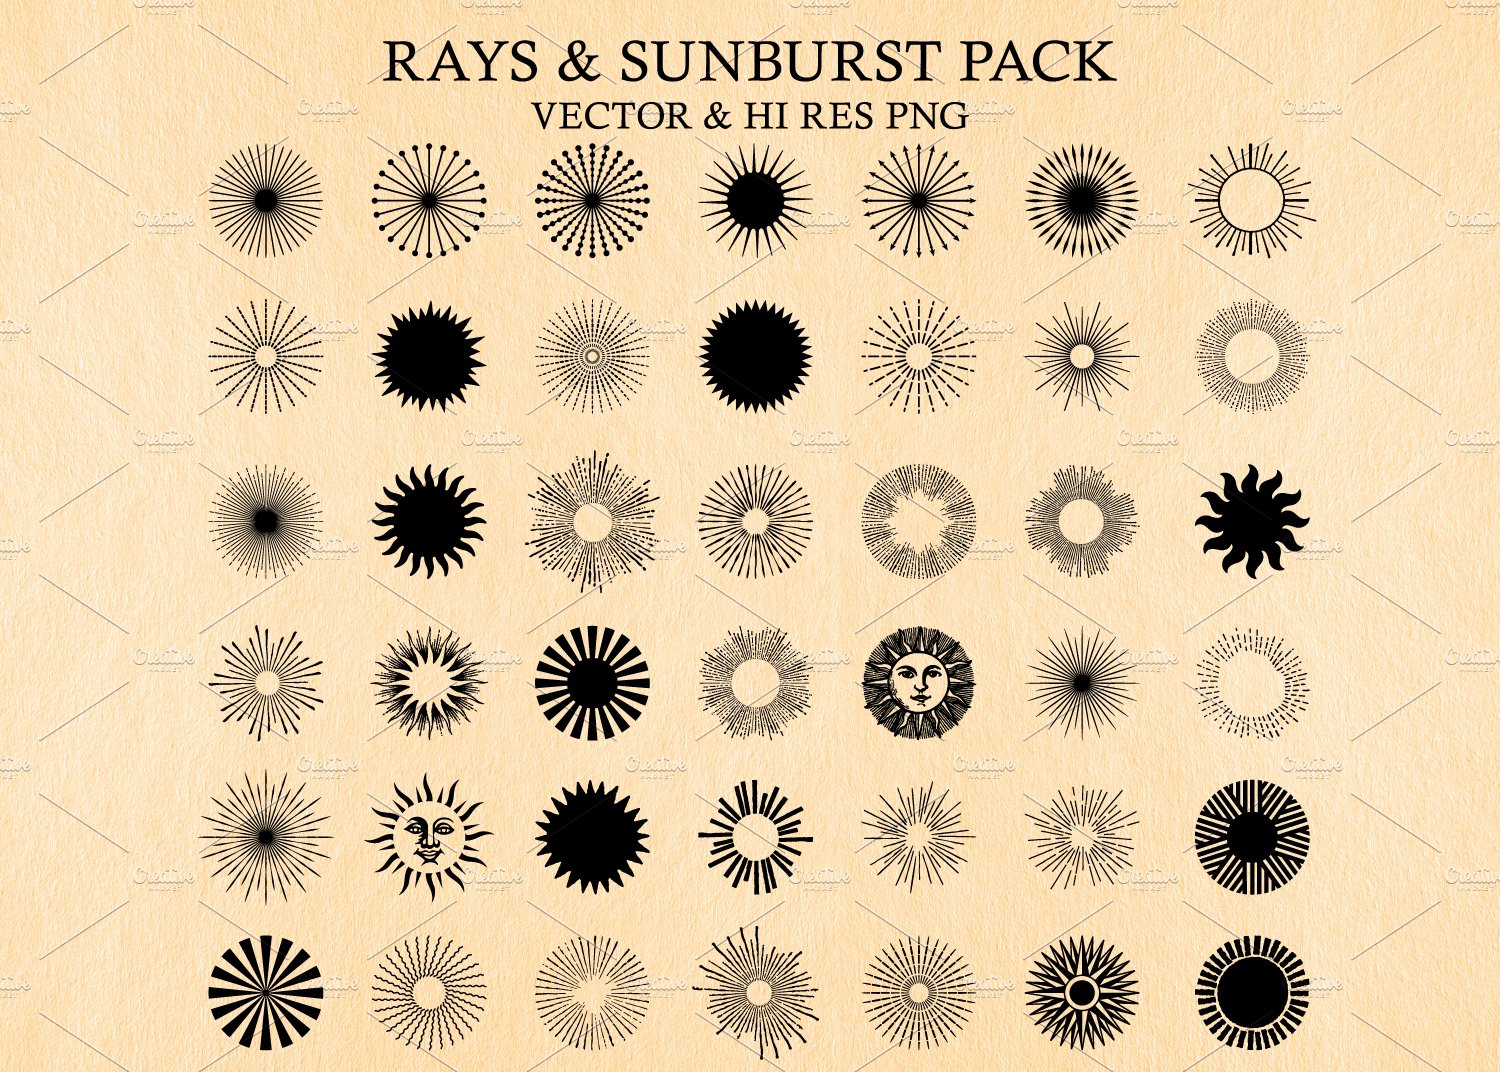 Light Rays & Sunburst Vector Pack cover image.